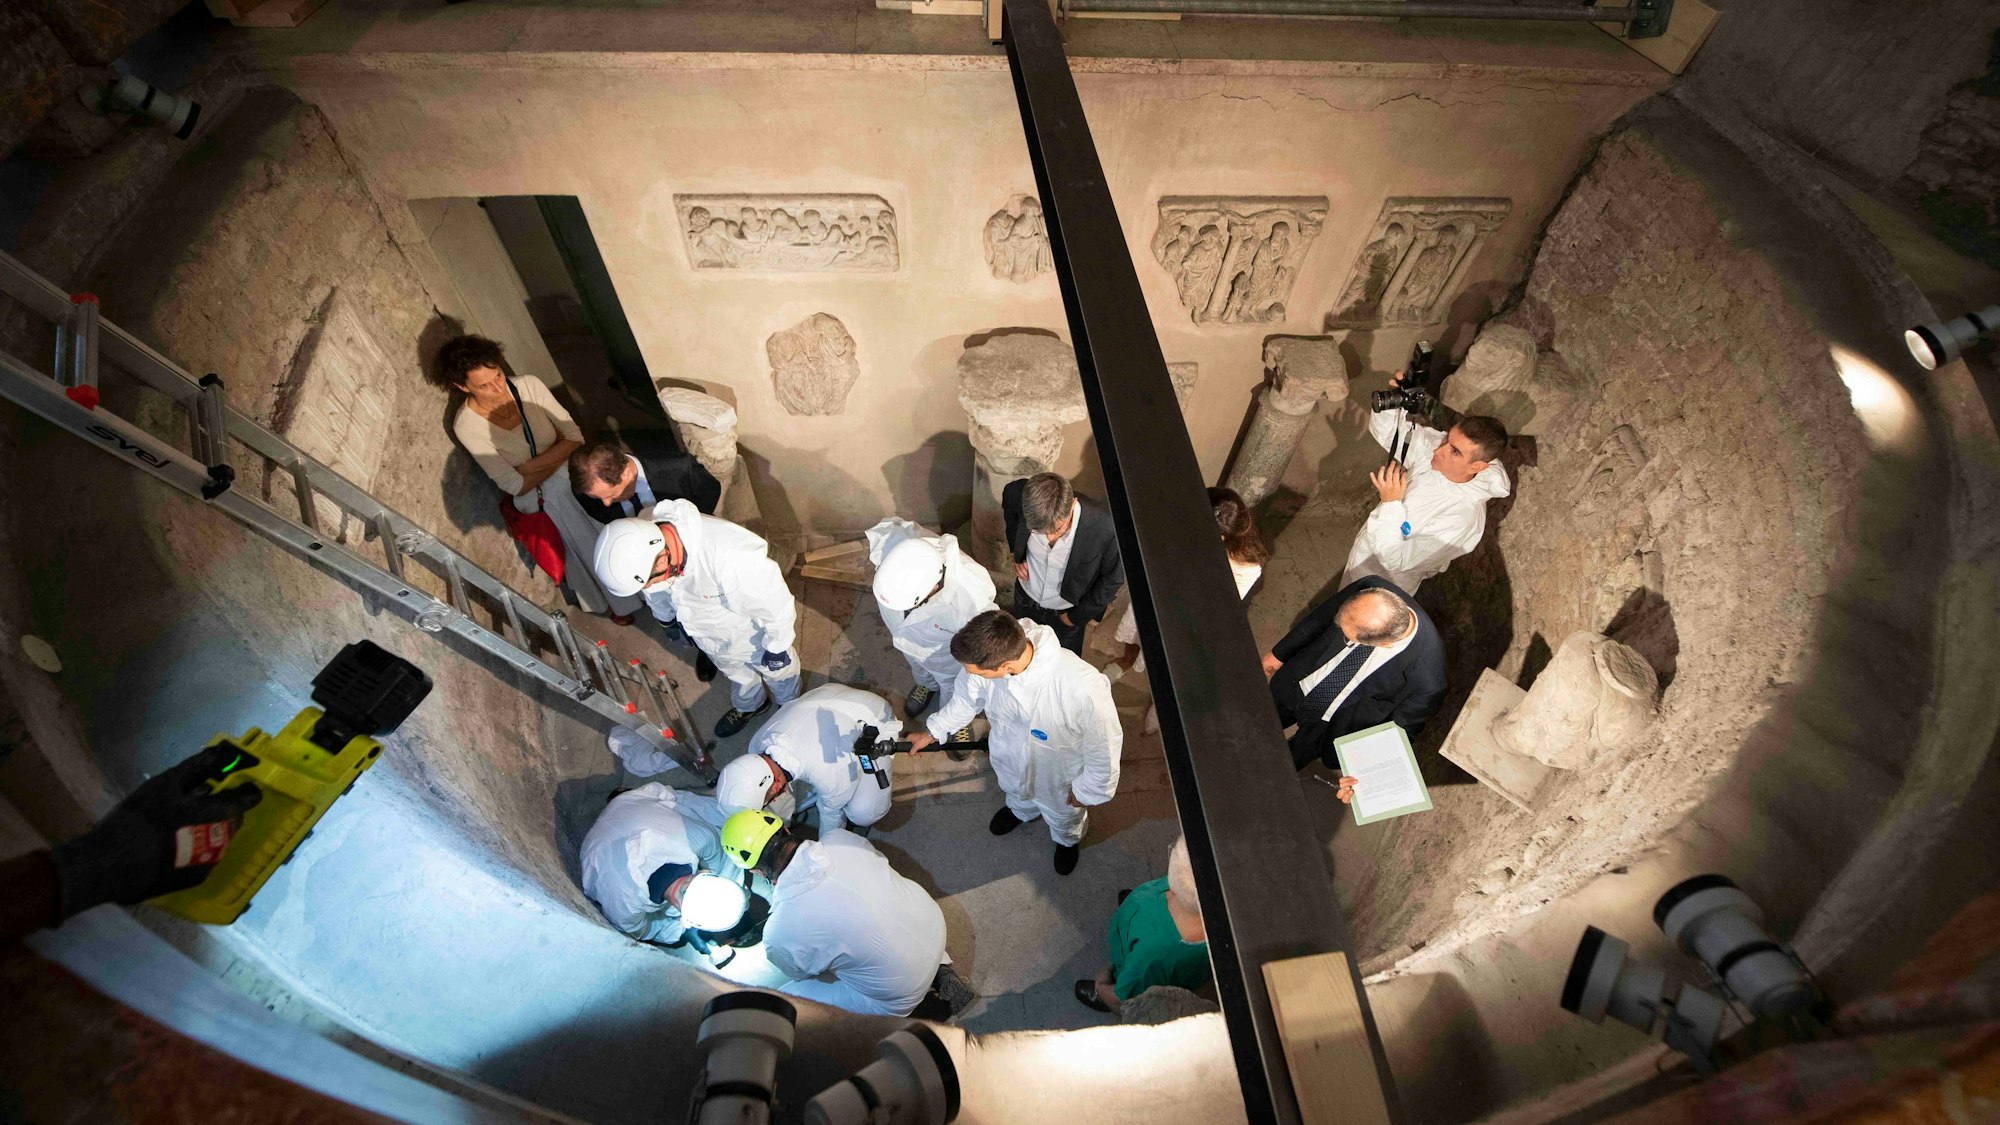 2019 hatte der Vatikan auf der Suche nach sterblichen Überresten der verschwunden Emanuela Orlandi zwei Beinkeller geöffnet. Nach Angaben der Ermittler wurden darin aber nur alte Knochen gefunden. Das Bild zeigt die Öffnung des Grabes mit Ermittlern von oben.